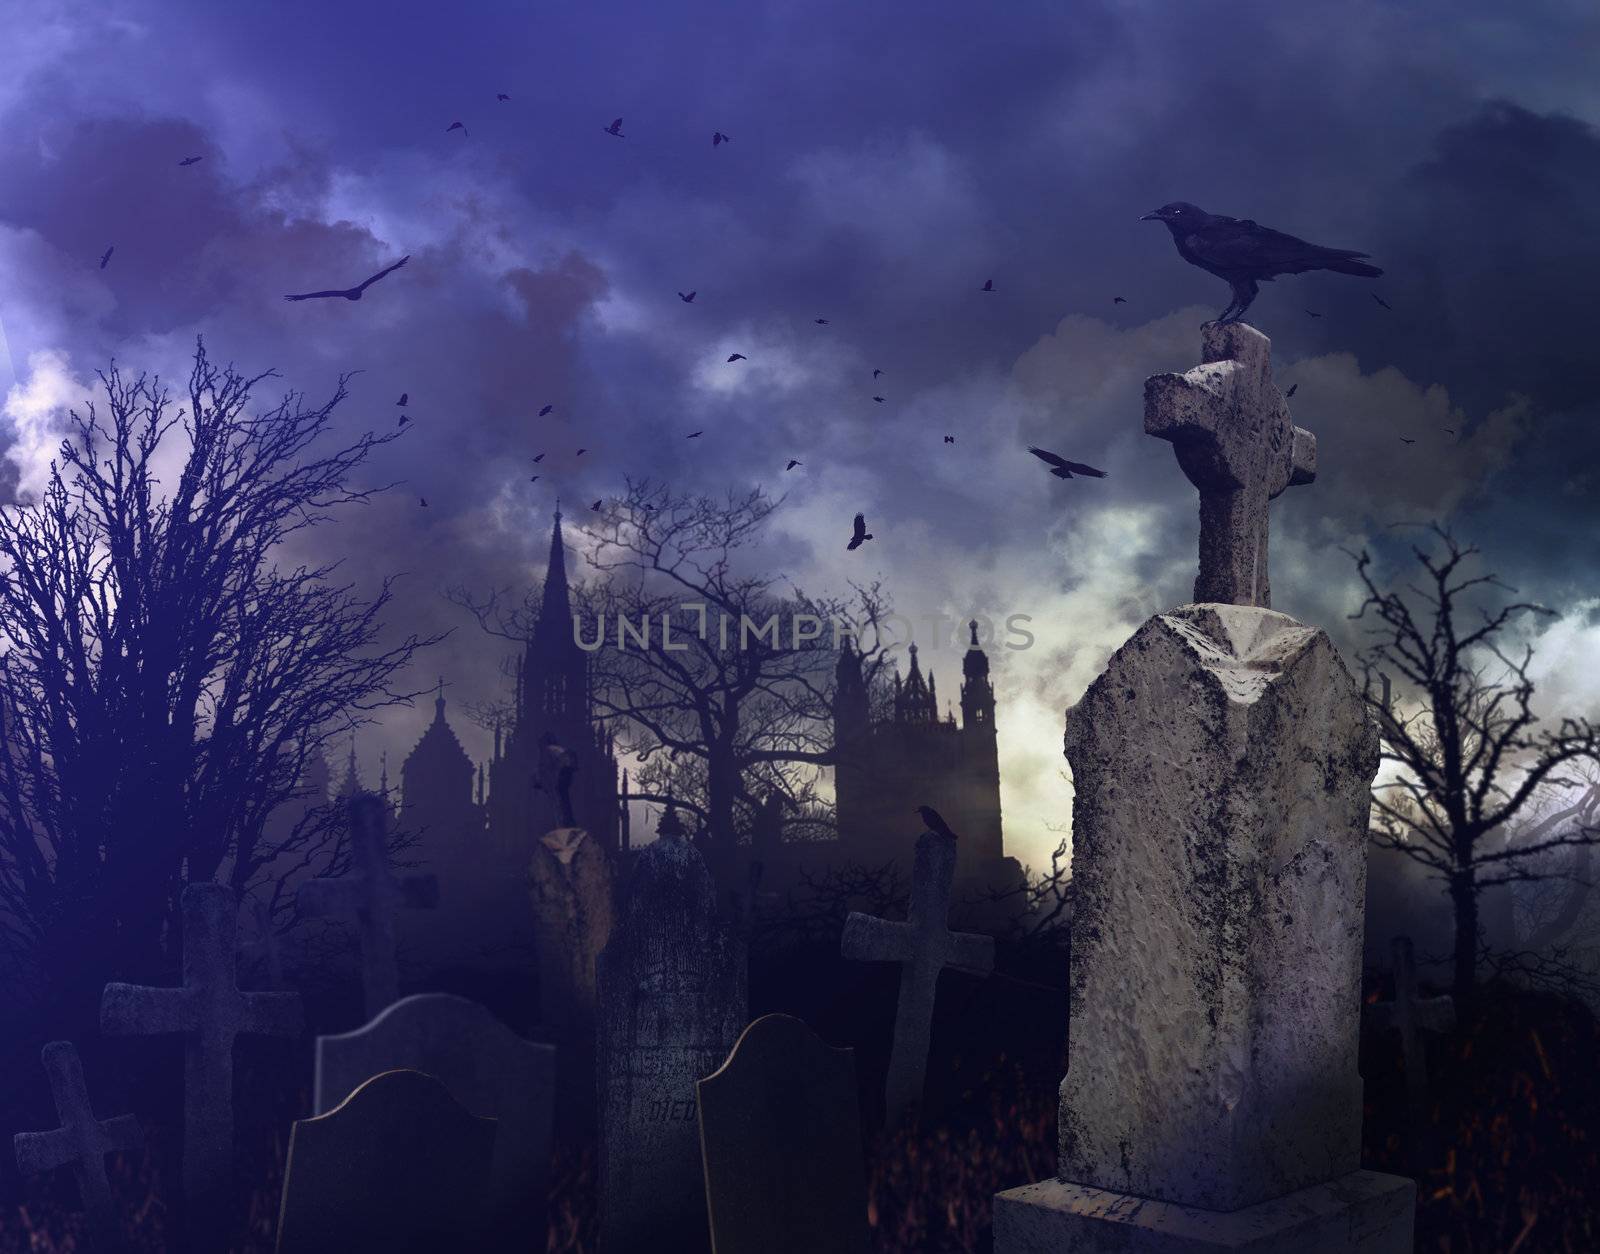 Night scene in a spooky graveyard by Sandralise